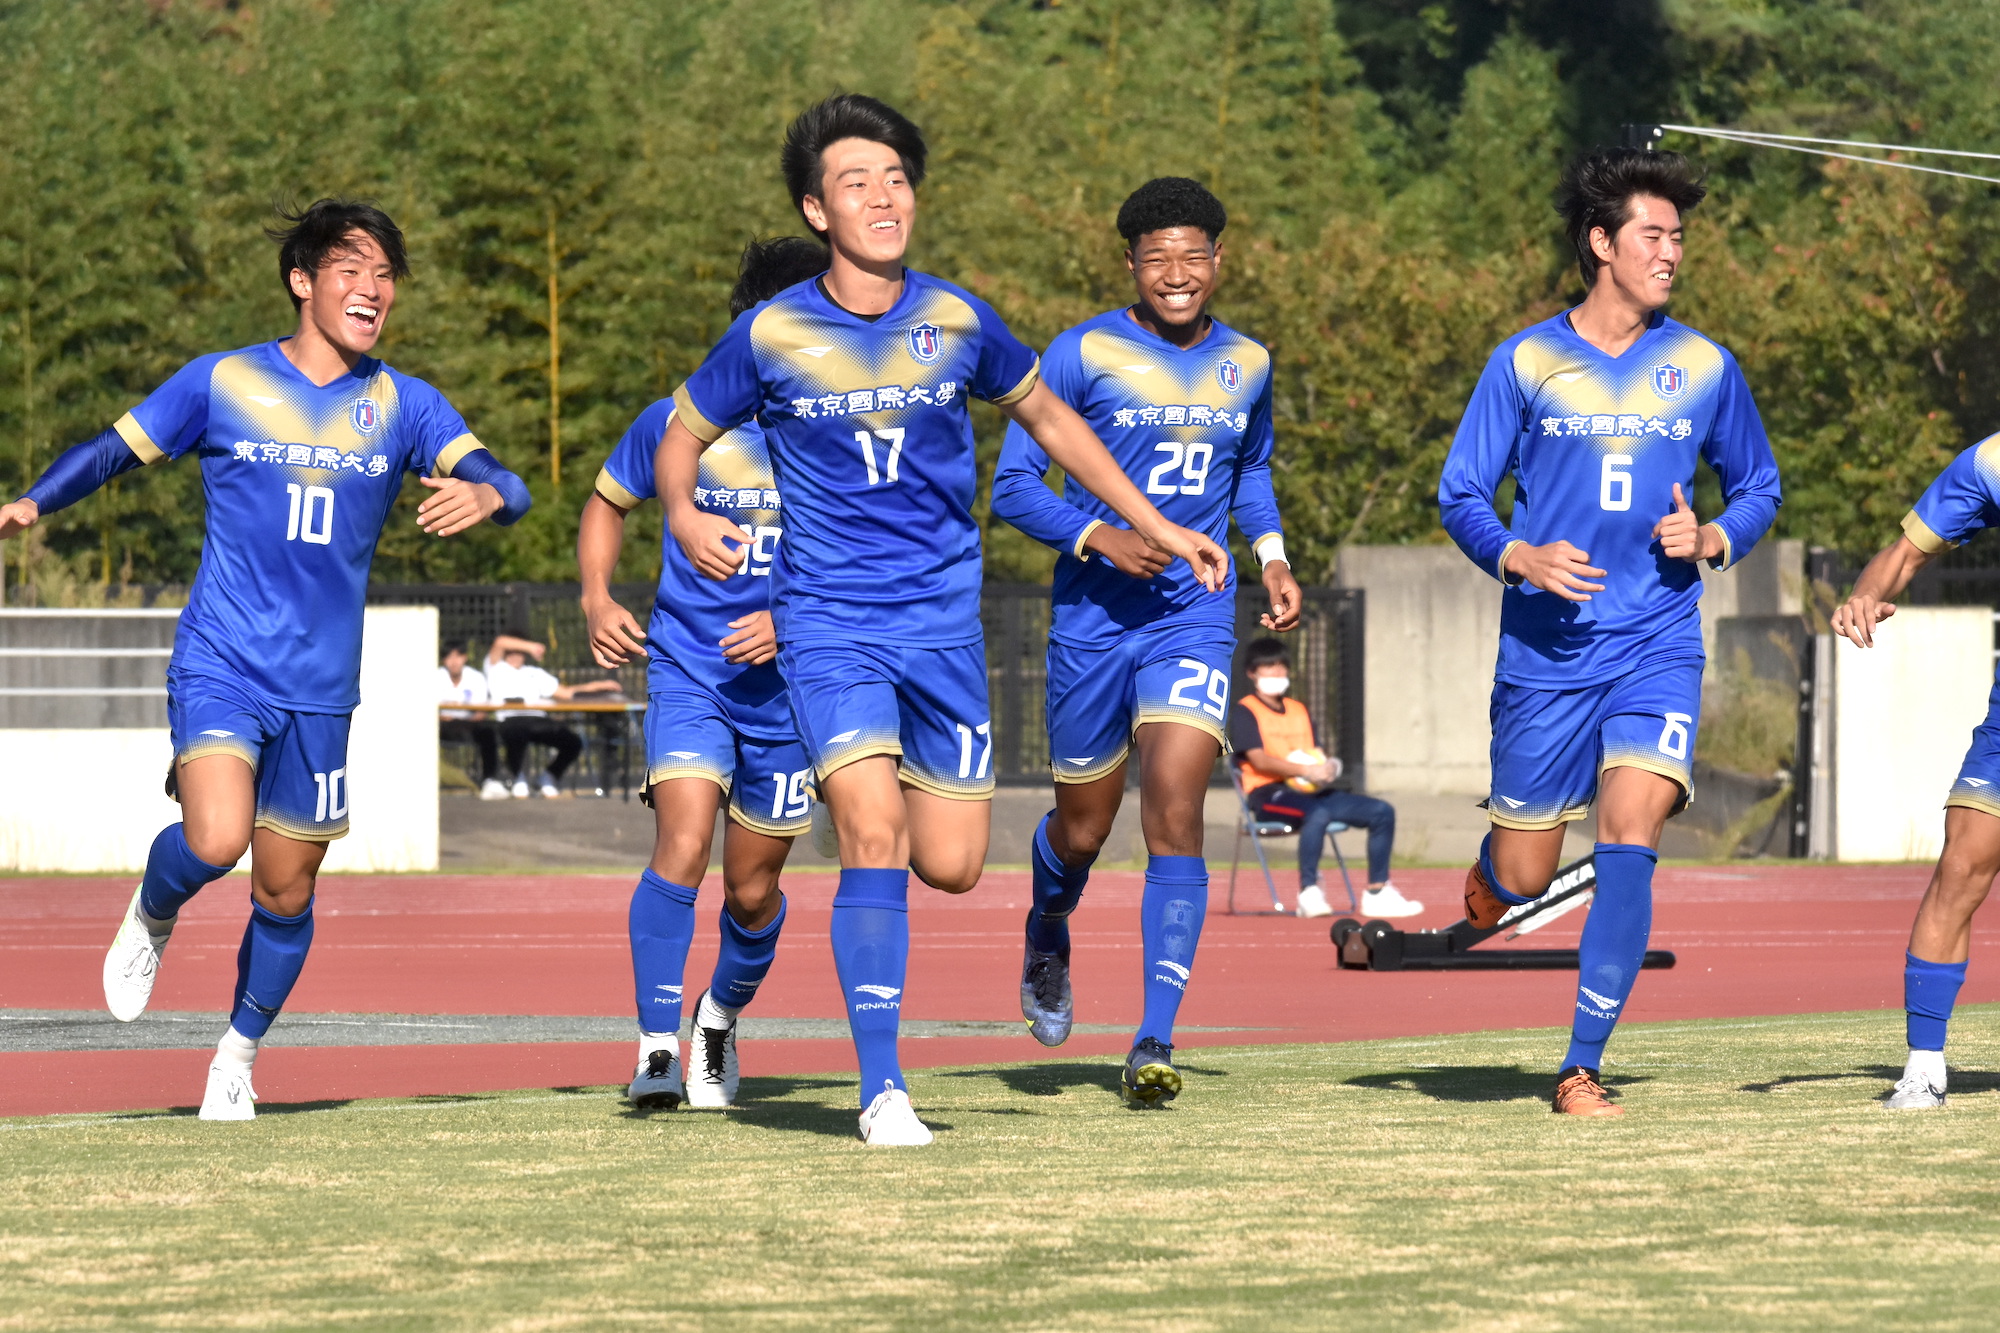 ユニフォームセット 青白 東京国際大学 TIU サッカー部 - サッカー 